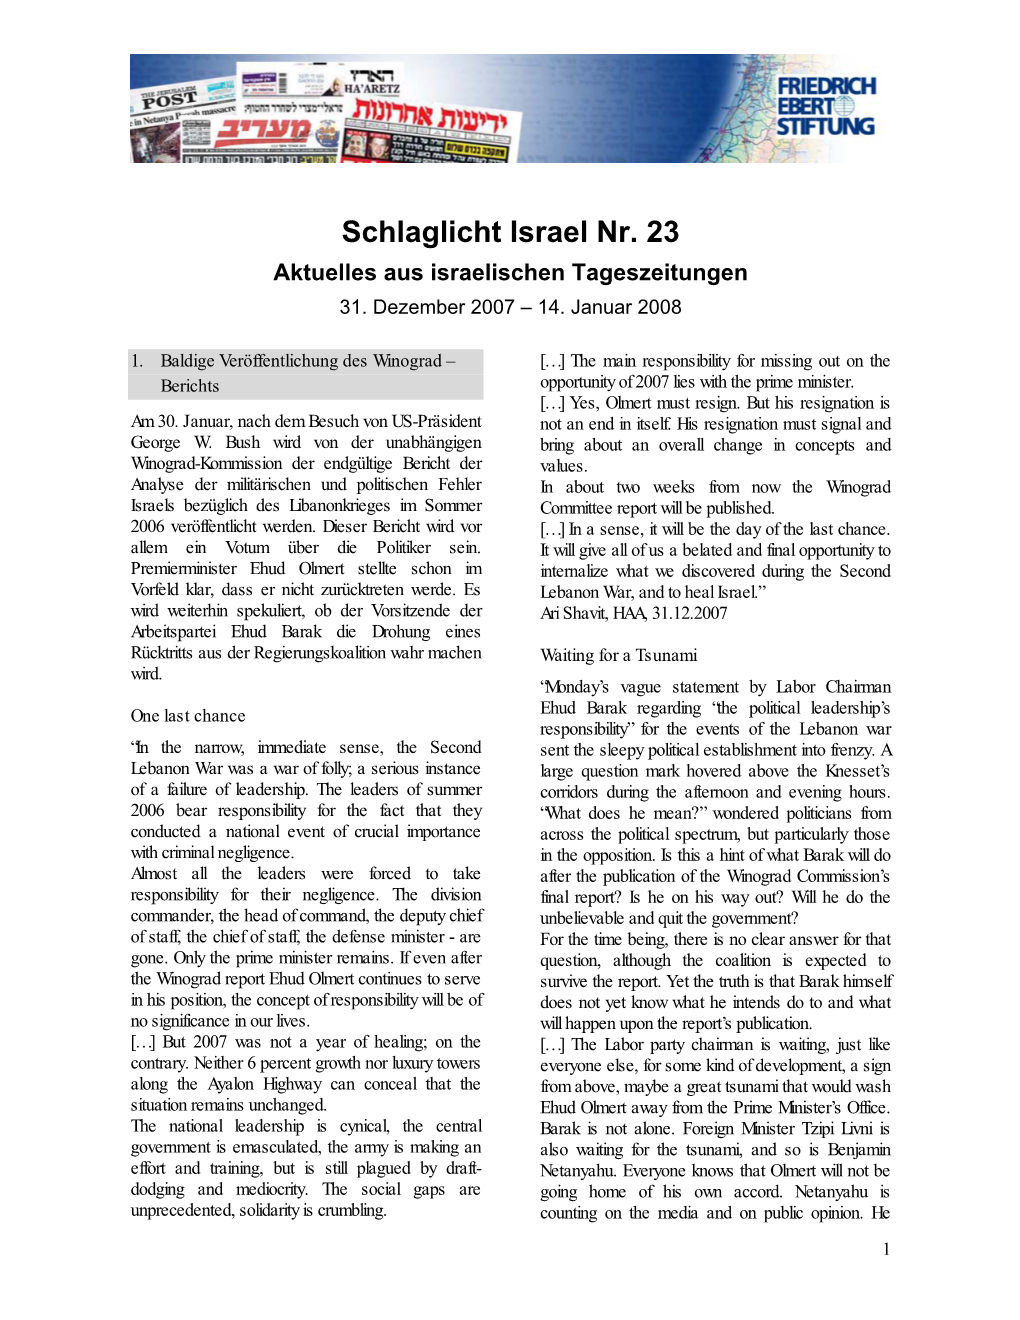 Schlaglicht Israel Nr. 23 Aktuelles Aus Israelischen Tageszeitungen 31